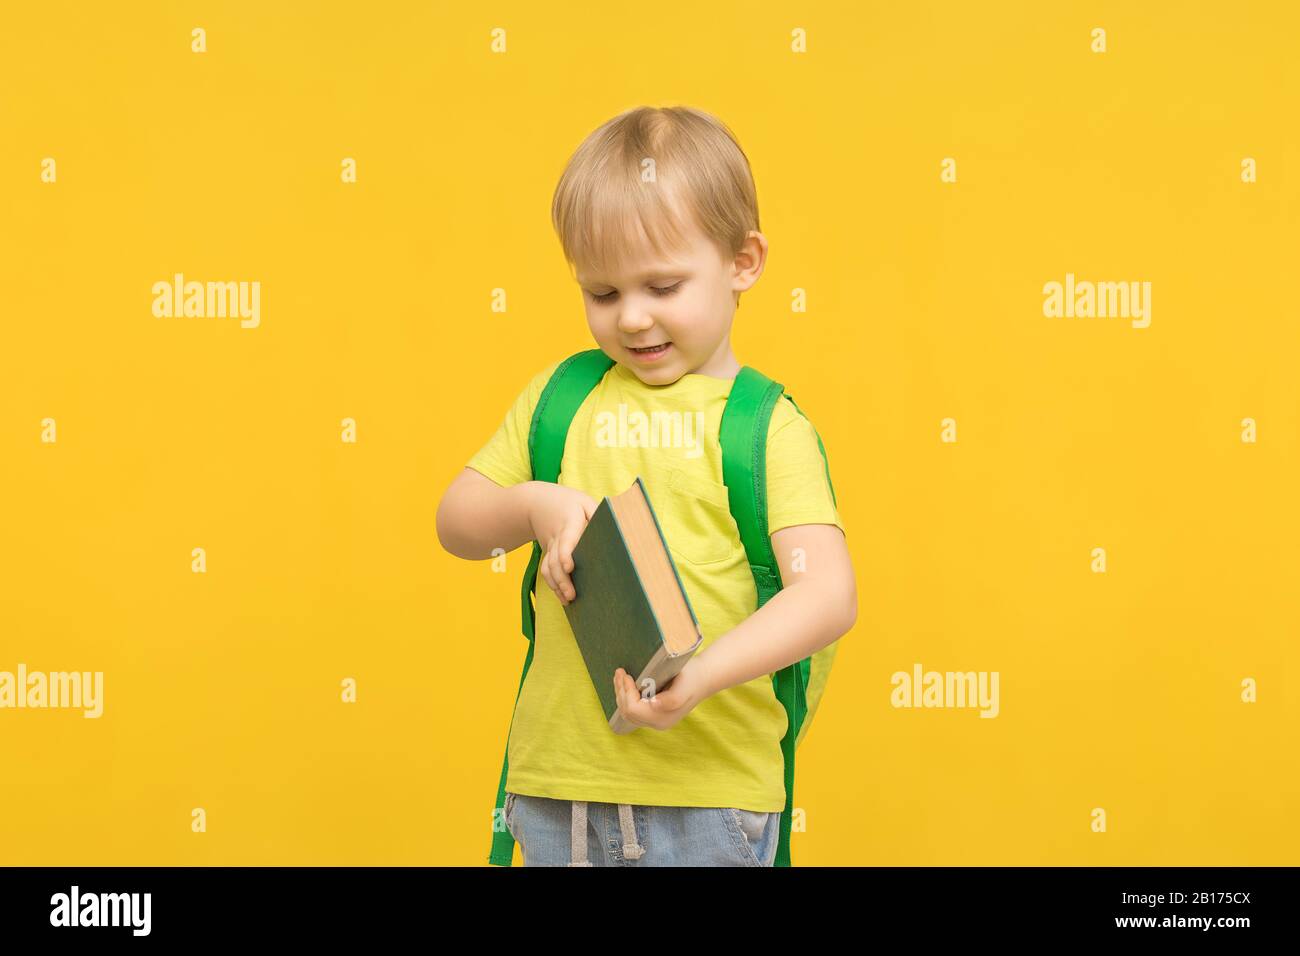 Kinderblonder Junge mit Rucksack öffnet ein Buch auf einem gelb hellen Hintergrund. Konzept für Artikel über Studium, Lesen, Kindheit und Vorschule Childre Stockfoto